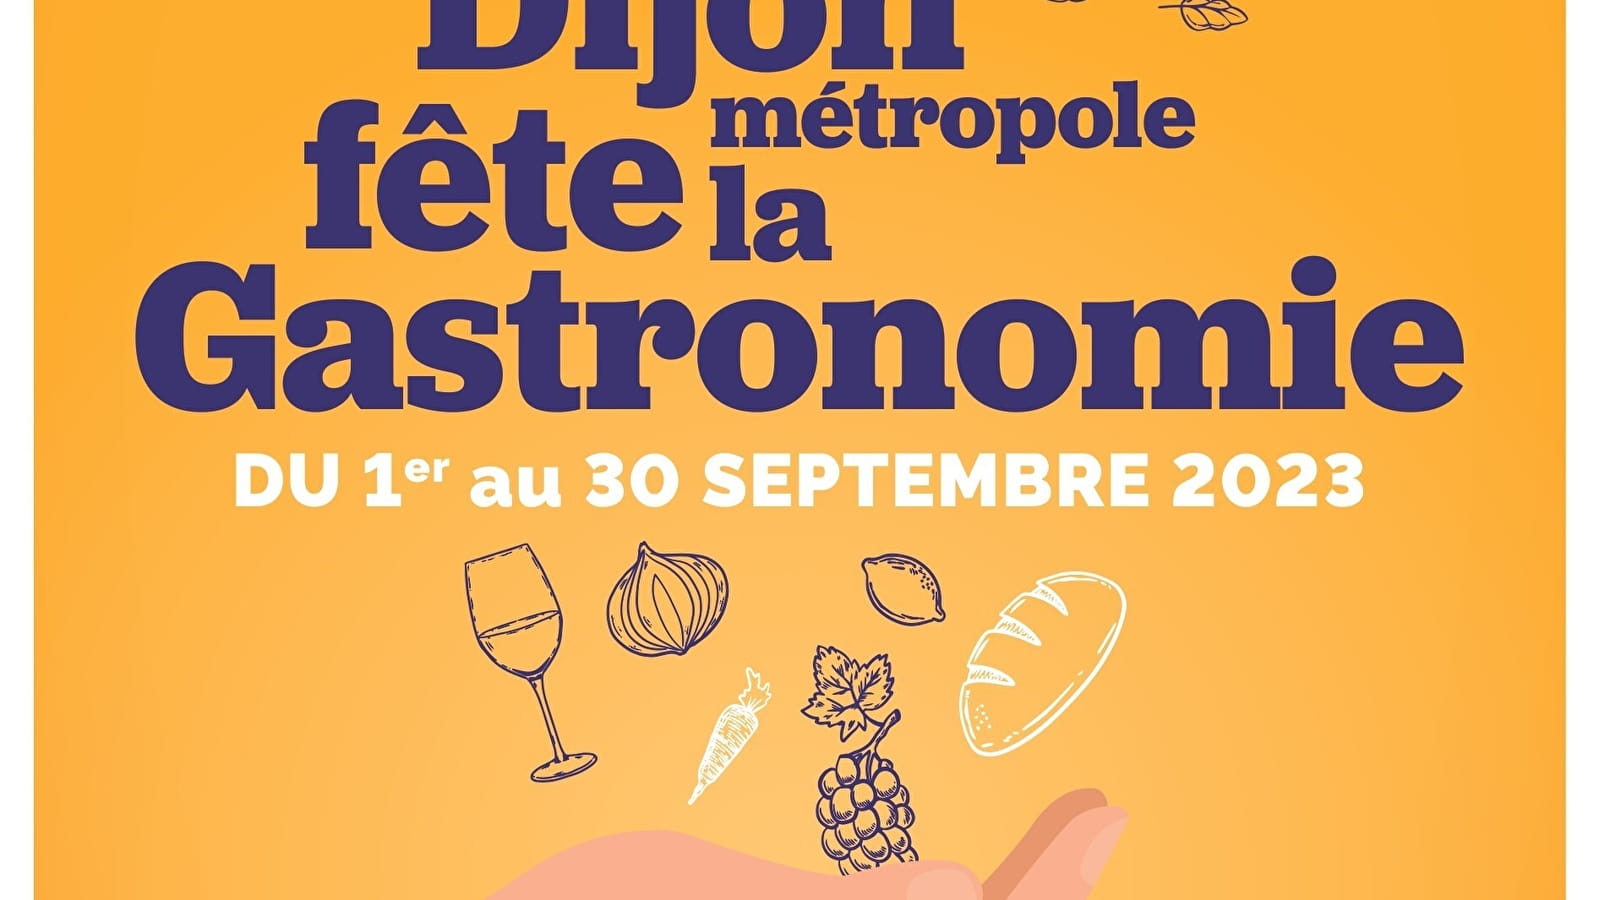 Dijon Métropole fête la gastronomie ! 